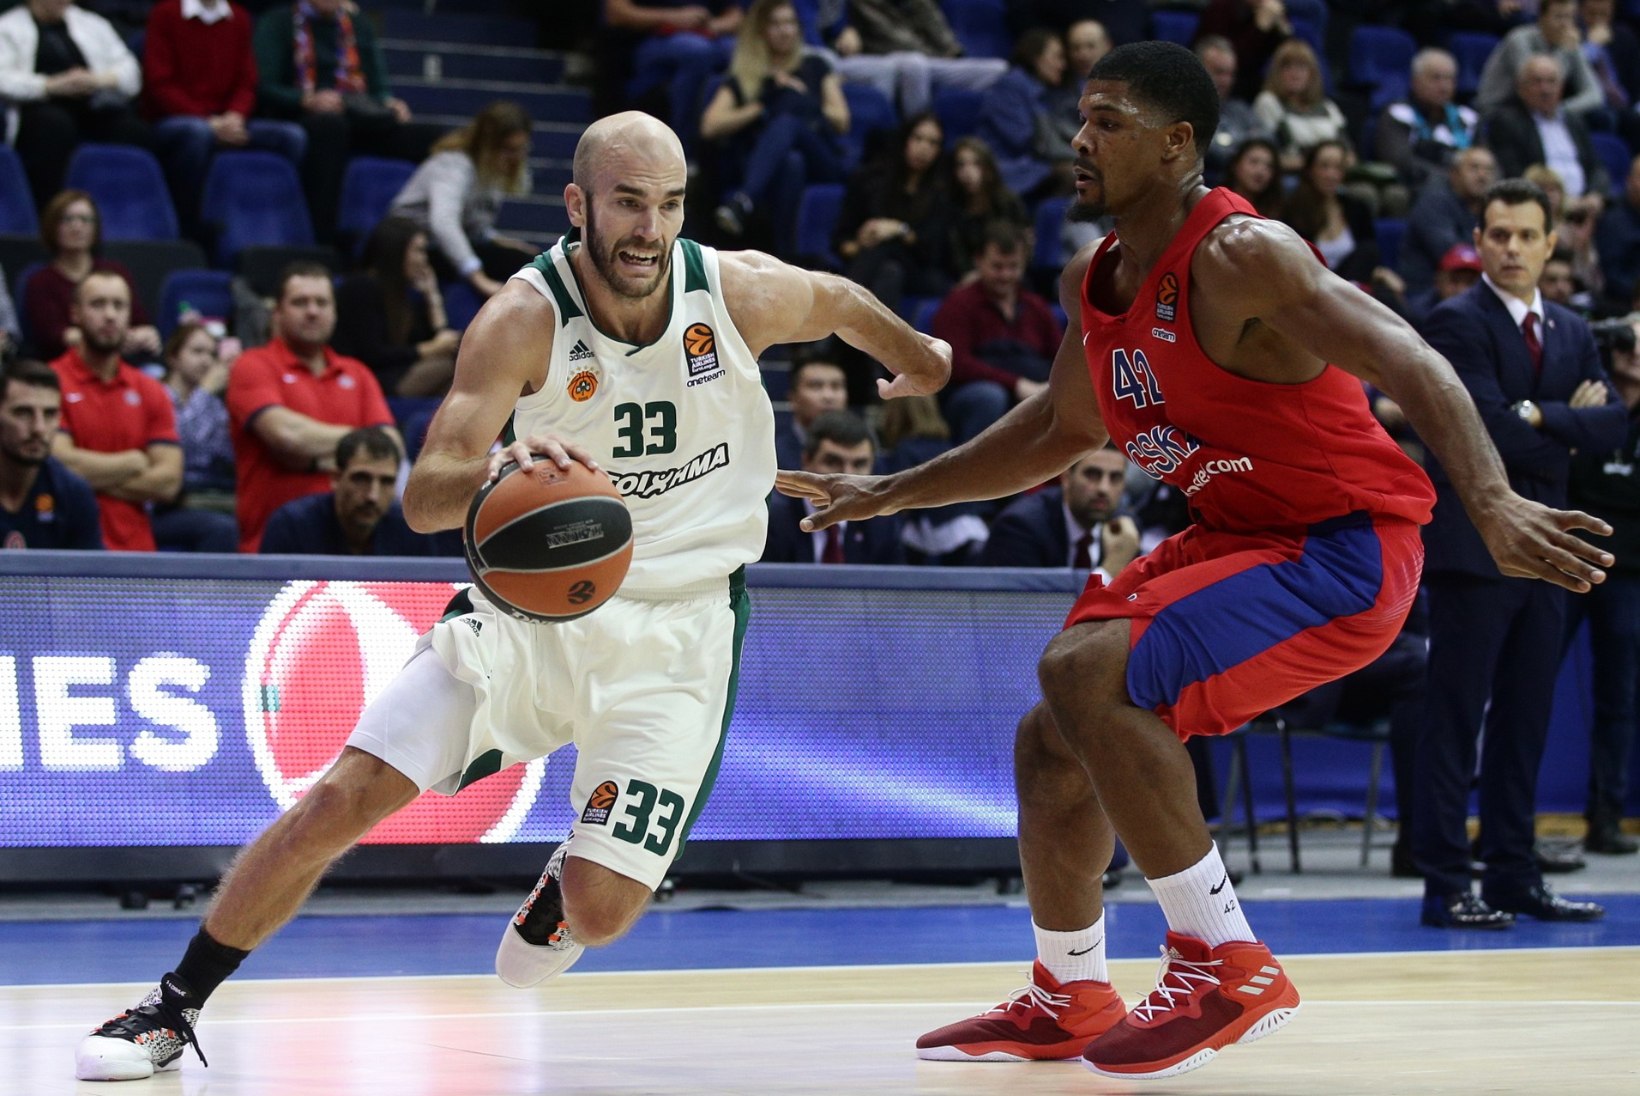 Uus ajastu - kas Panathinaikos lahkub Euroliigast ja liitub FIBA sarjaga?